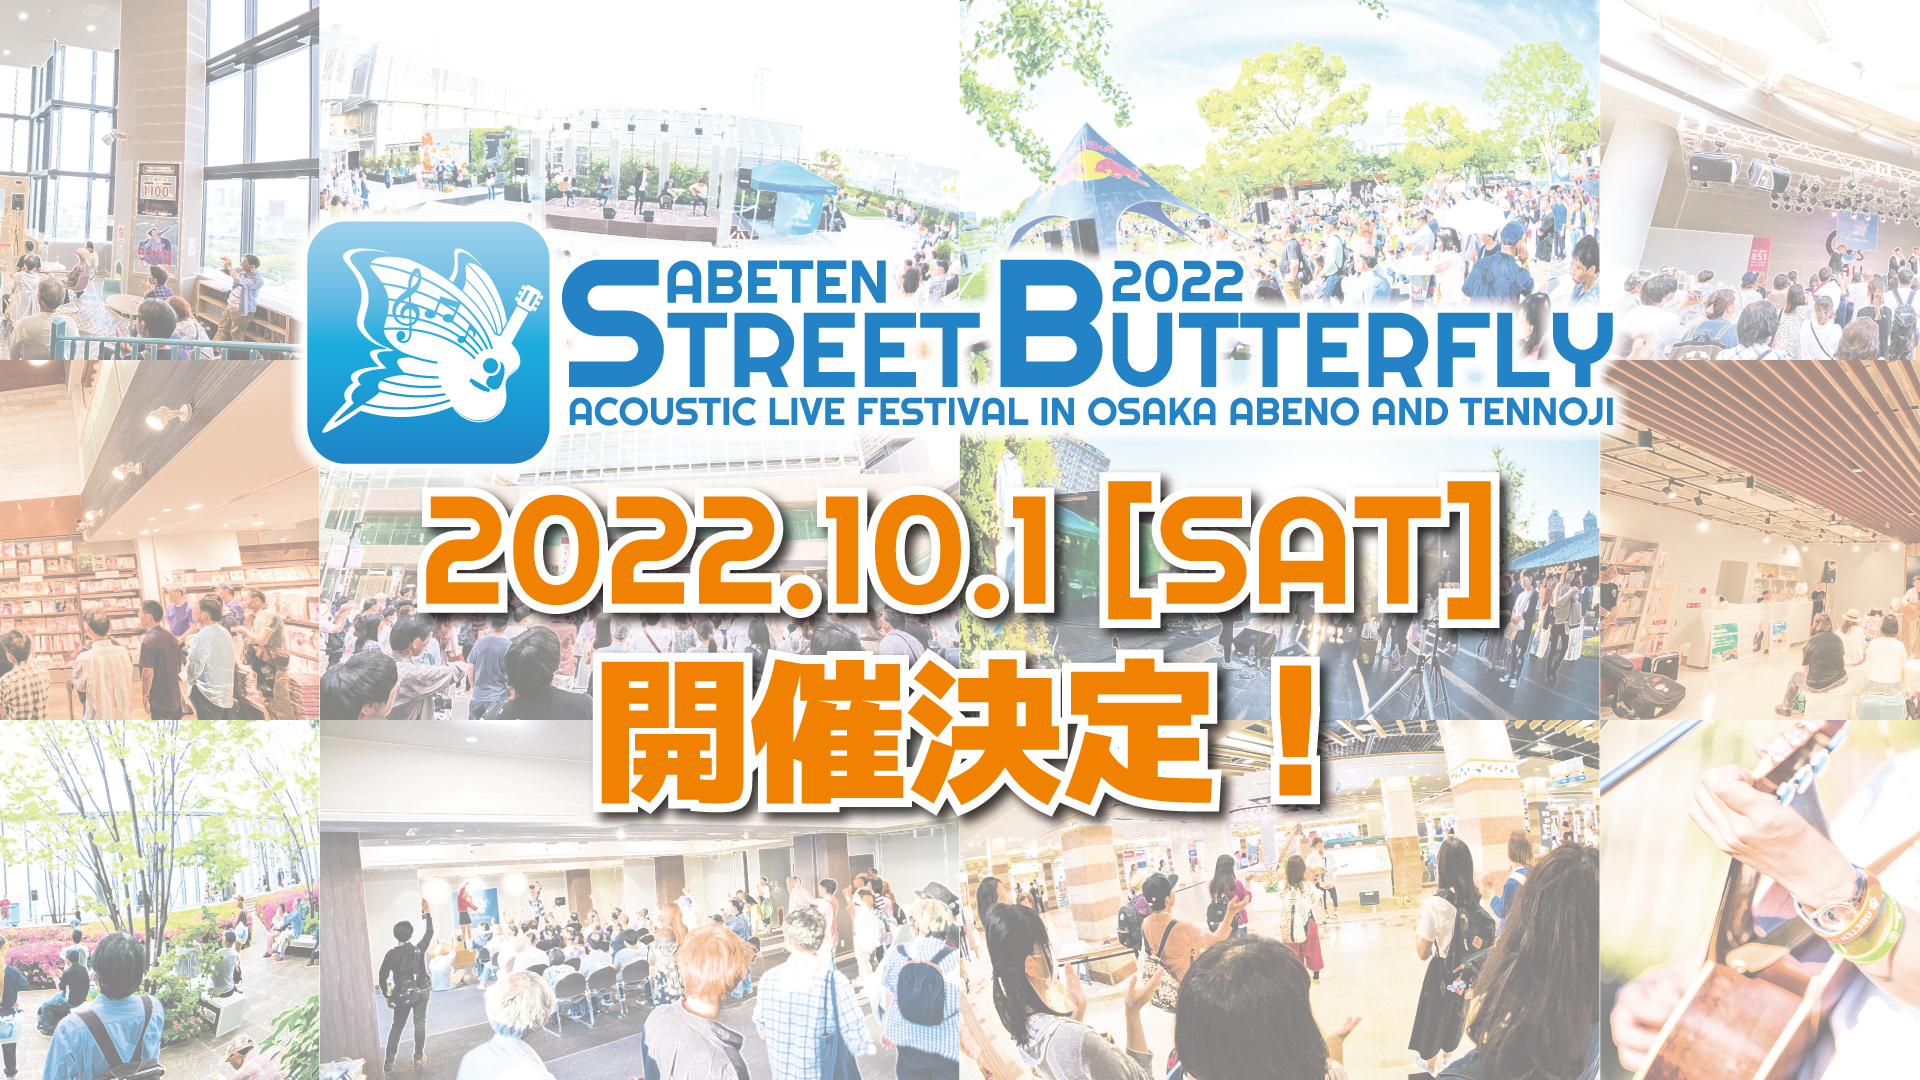 ABETEN STREET BUTTERFLY 2022 開催決定！